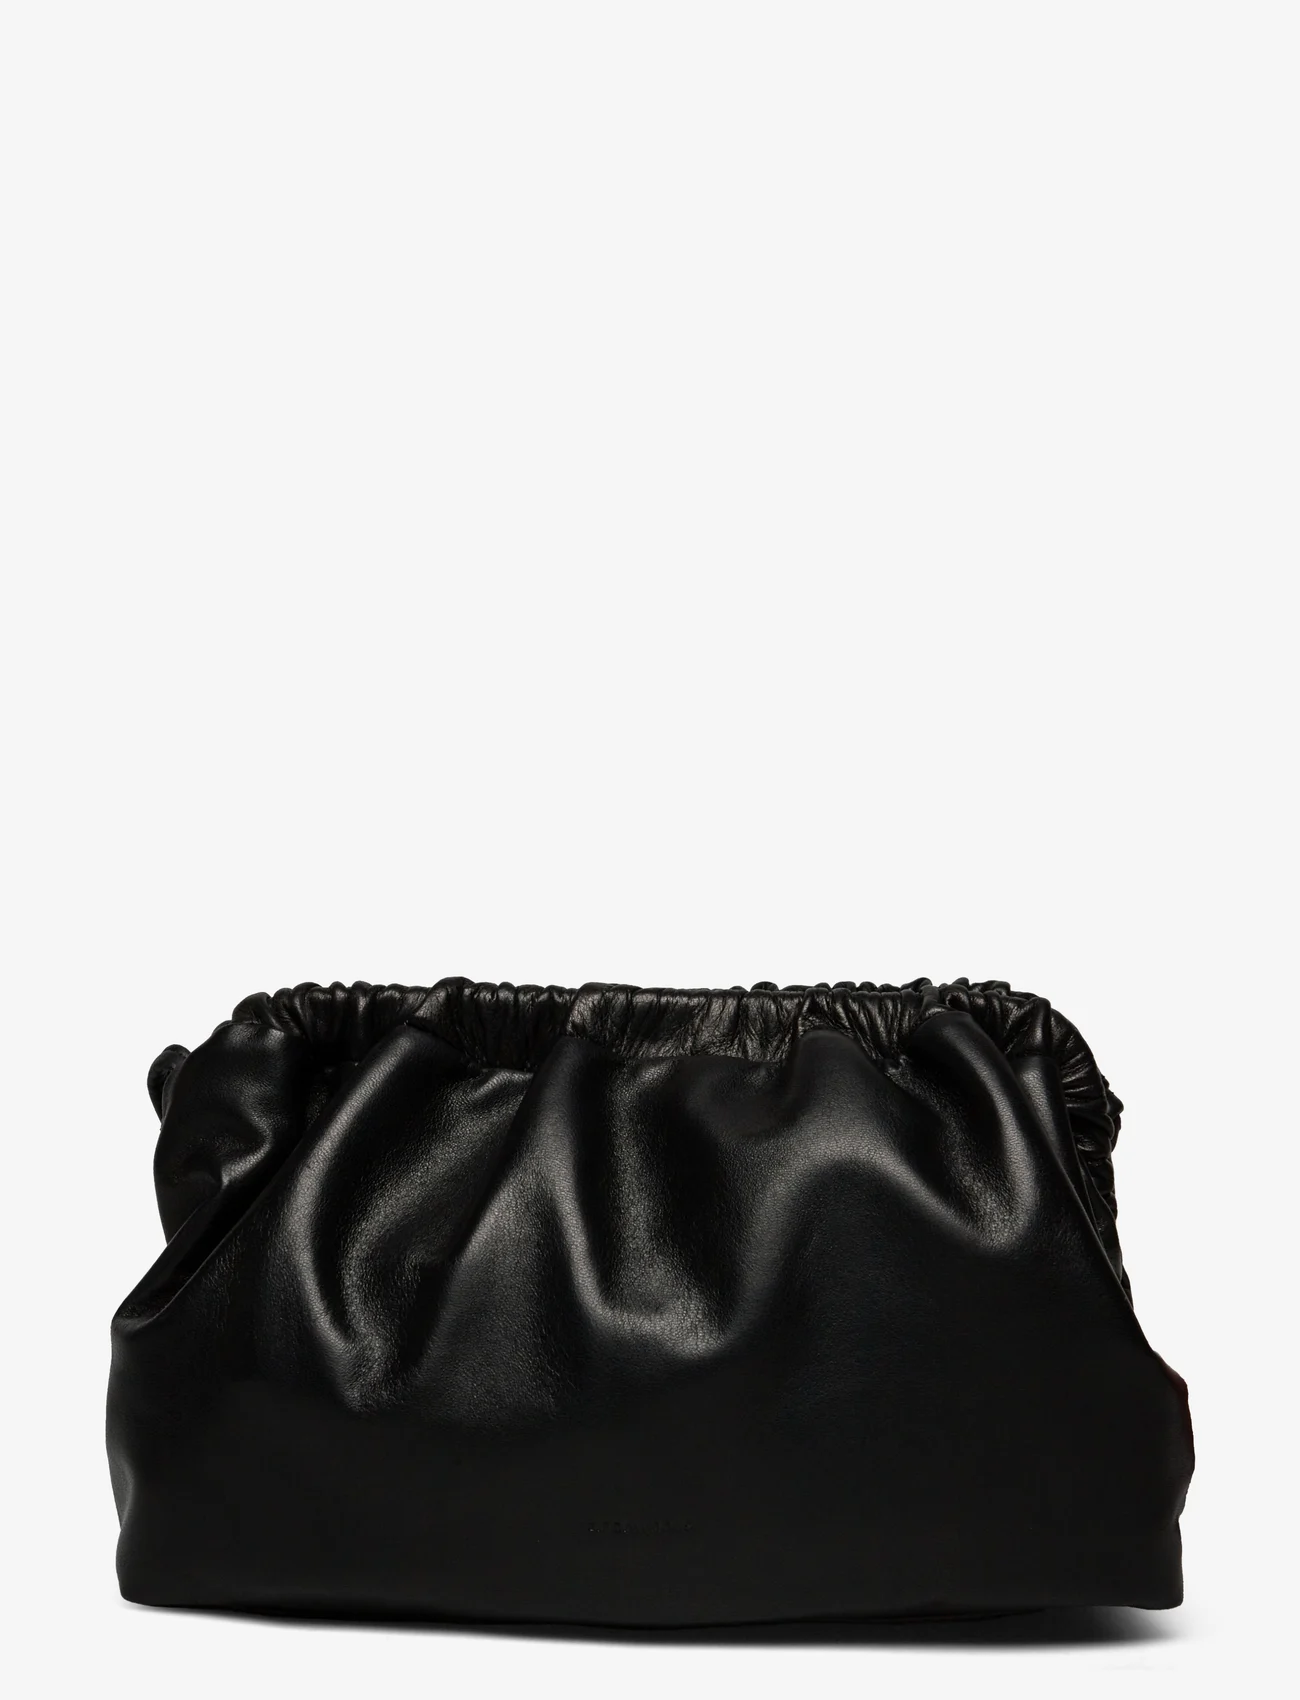 Anonymous Copenhagen - Hally grand cloud bag - odzież imprezowa w cenach outletowych - shiny lamb black - 1